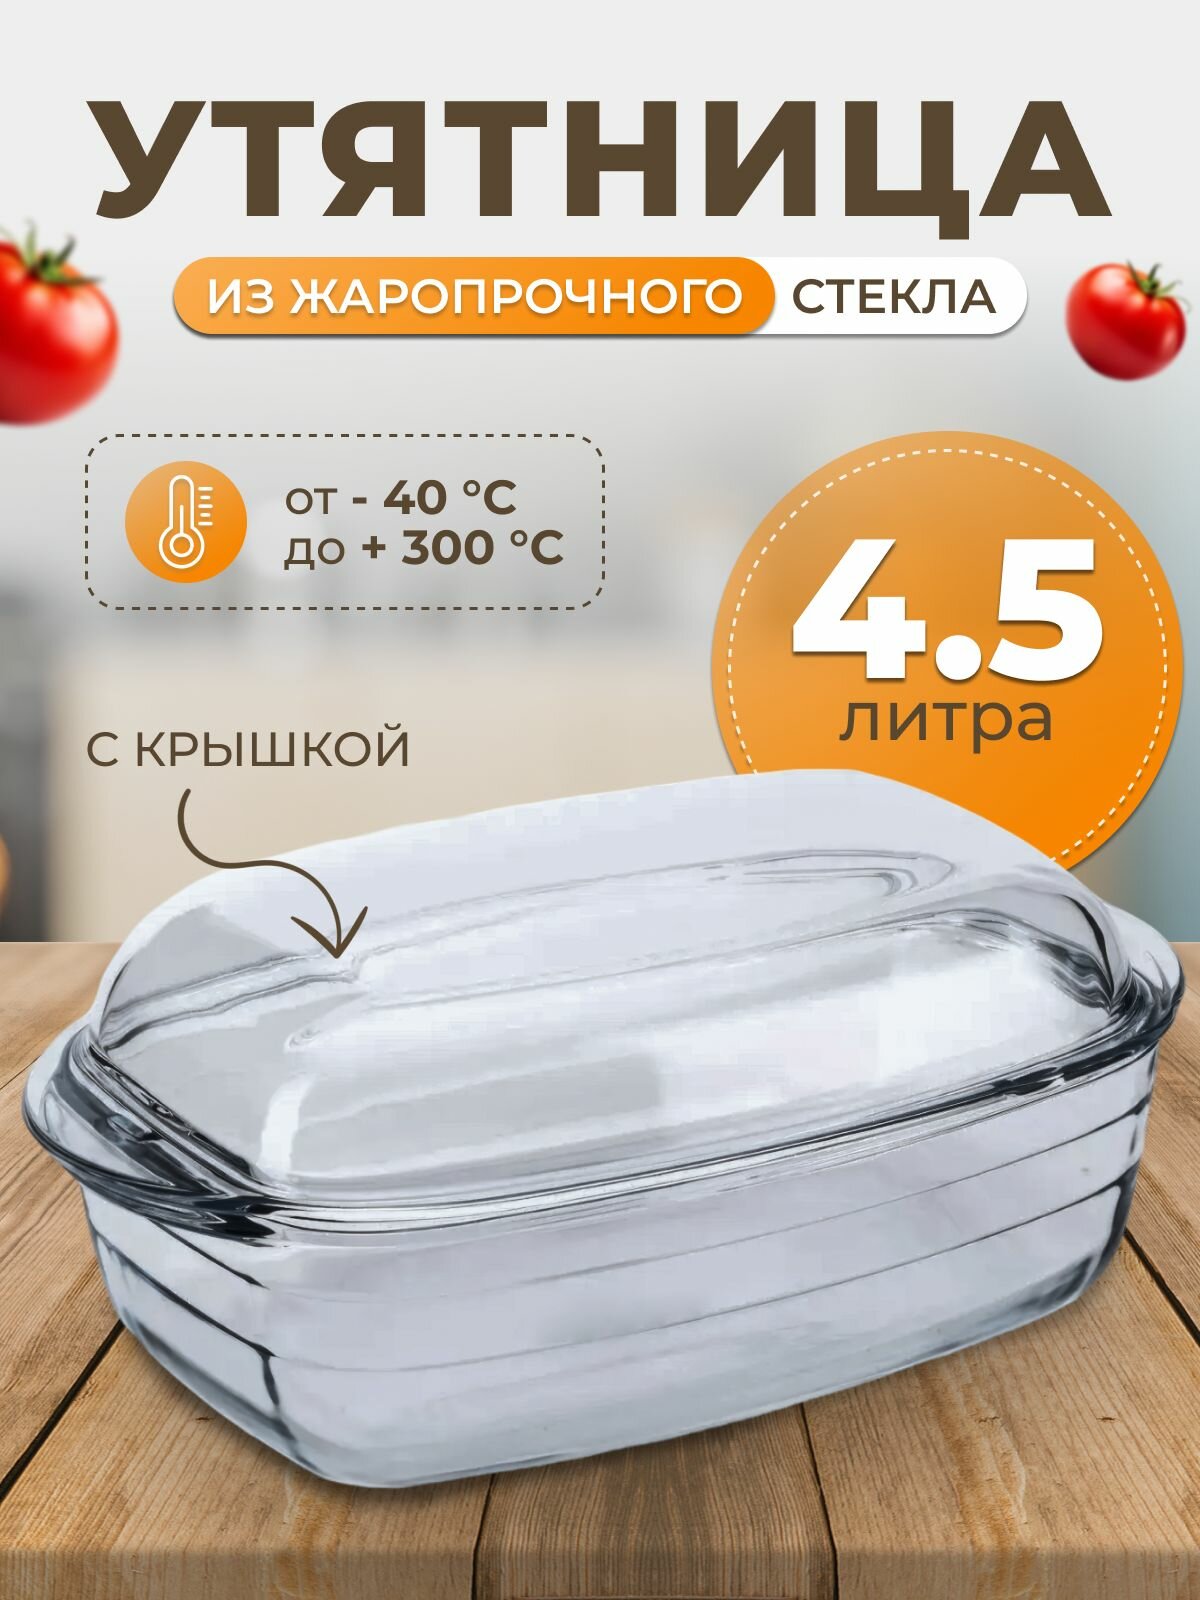 Утятница жаропрочная 4.5 л O Cuisine для запекания с крышкой - жаропрочная посуда O Cuisine для приготовления еды в духовом шкафу. Объем 4,5 литра